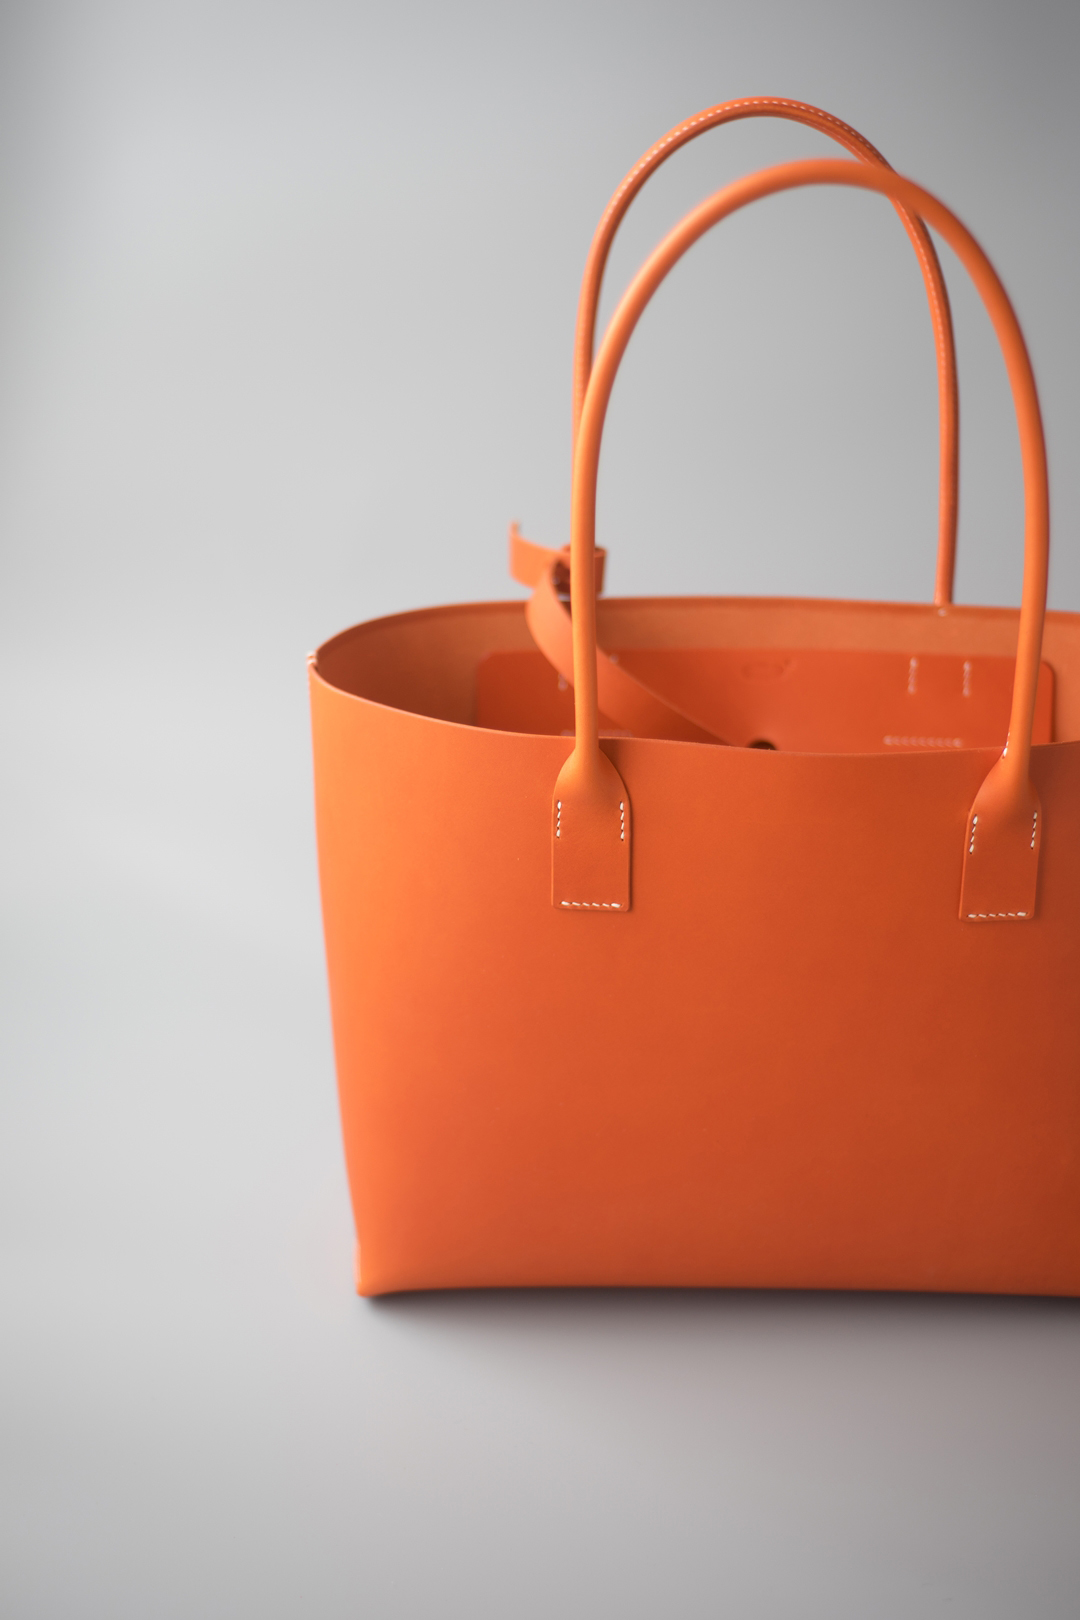 オレンジ色の手縫いトートバッグ２型が完成しました